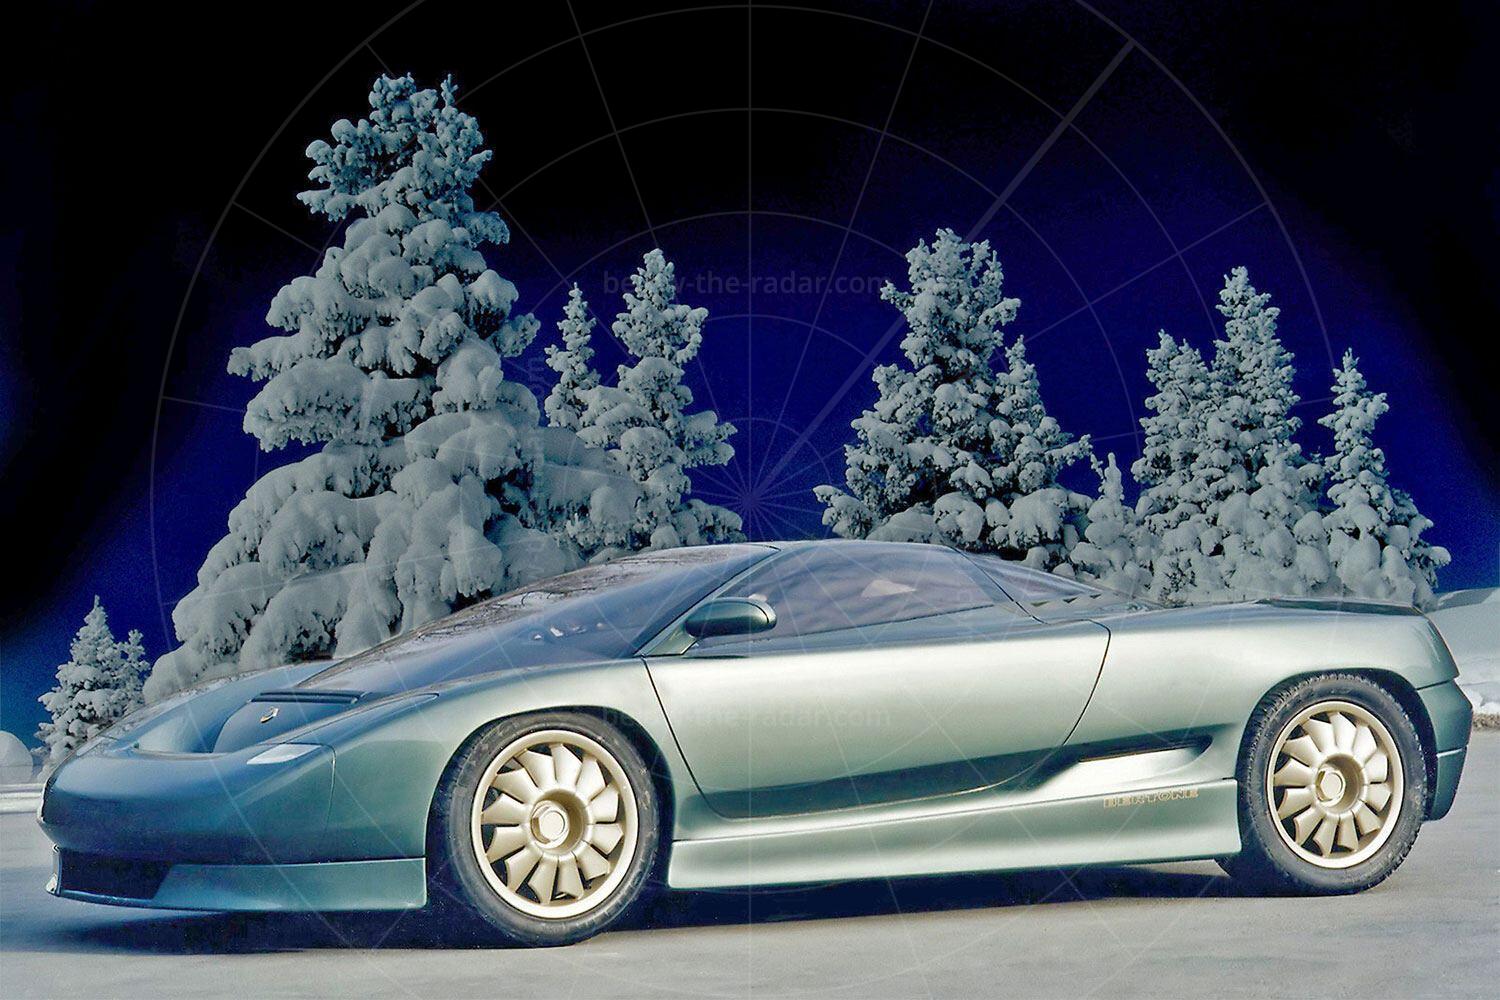 Bertone Emotion concept Pic: Magic Car Pics | Bertone Emotion concept